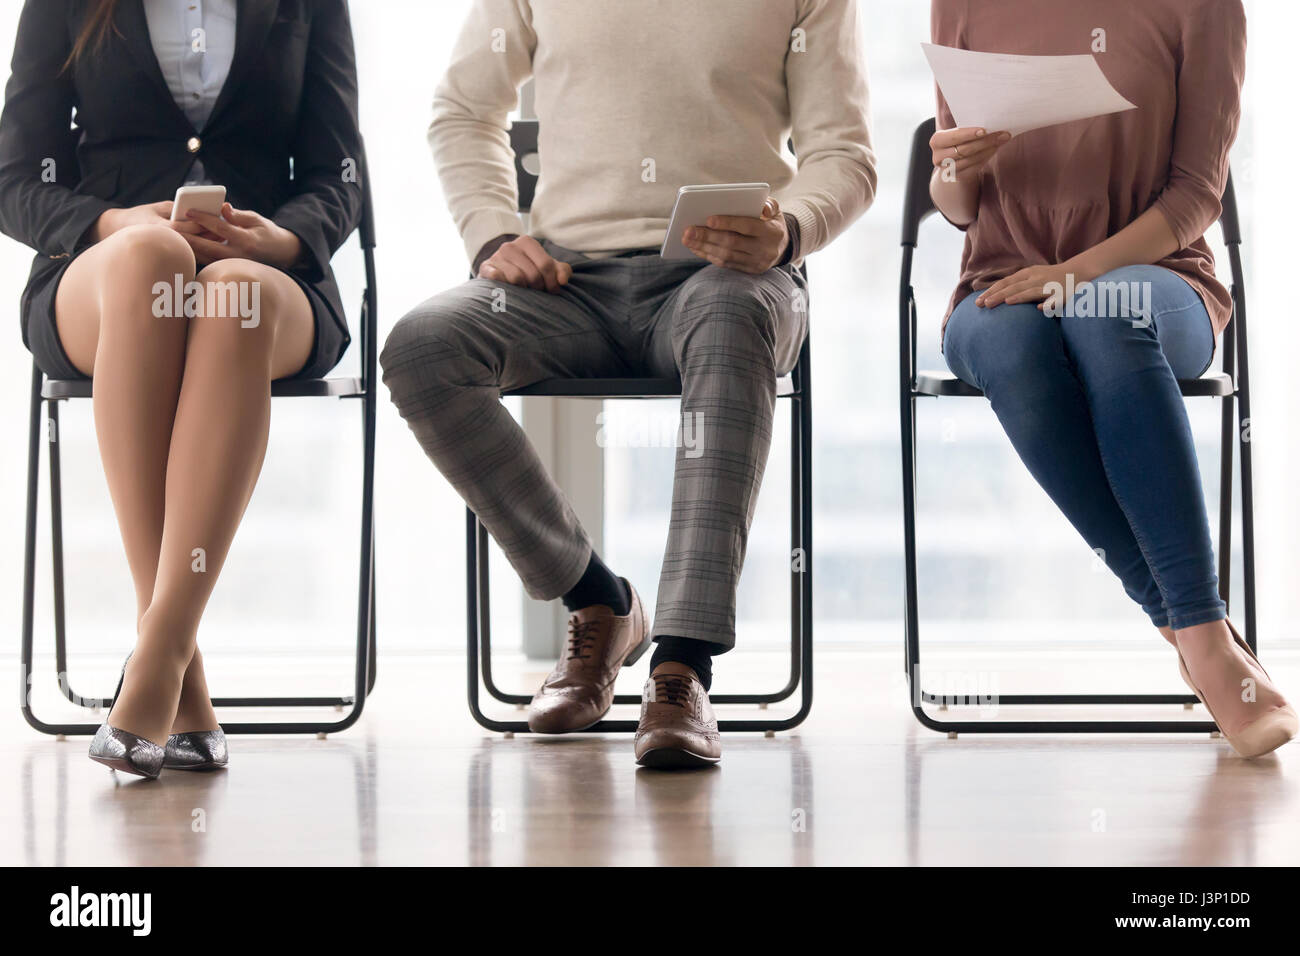 Groupe de personnes en attente d'entrevue d'emploi, assis sur des chaises Banque D'Images